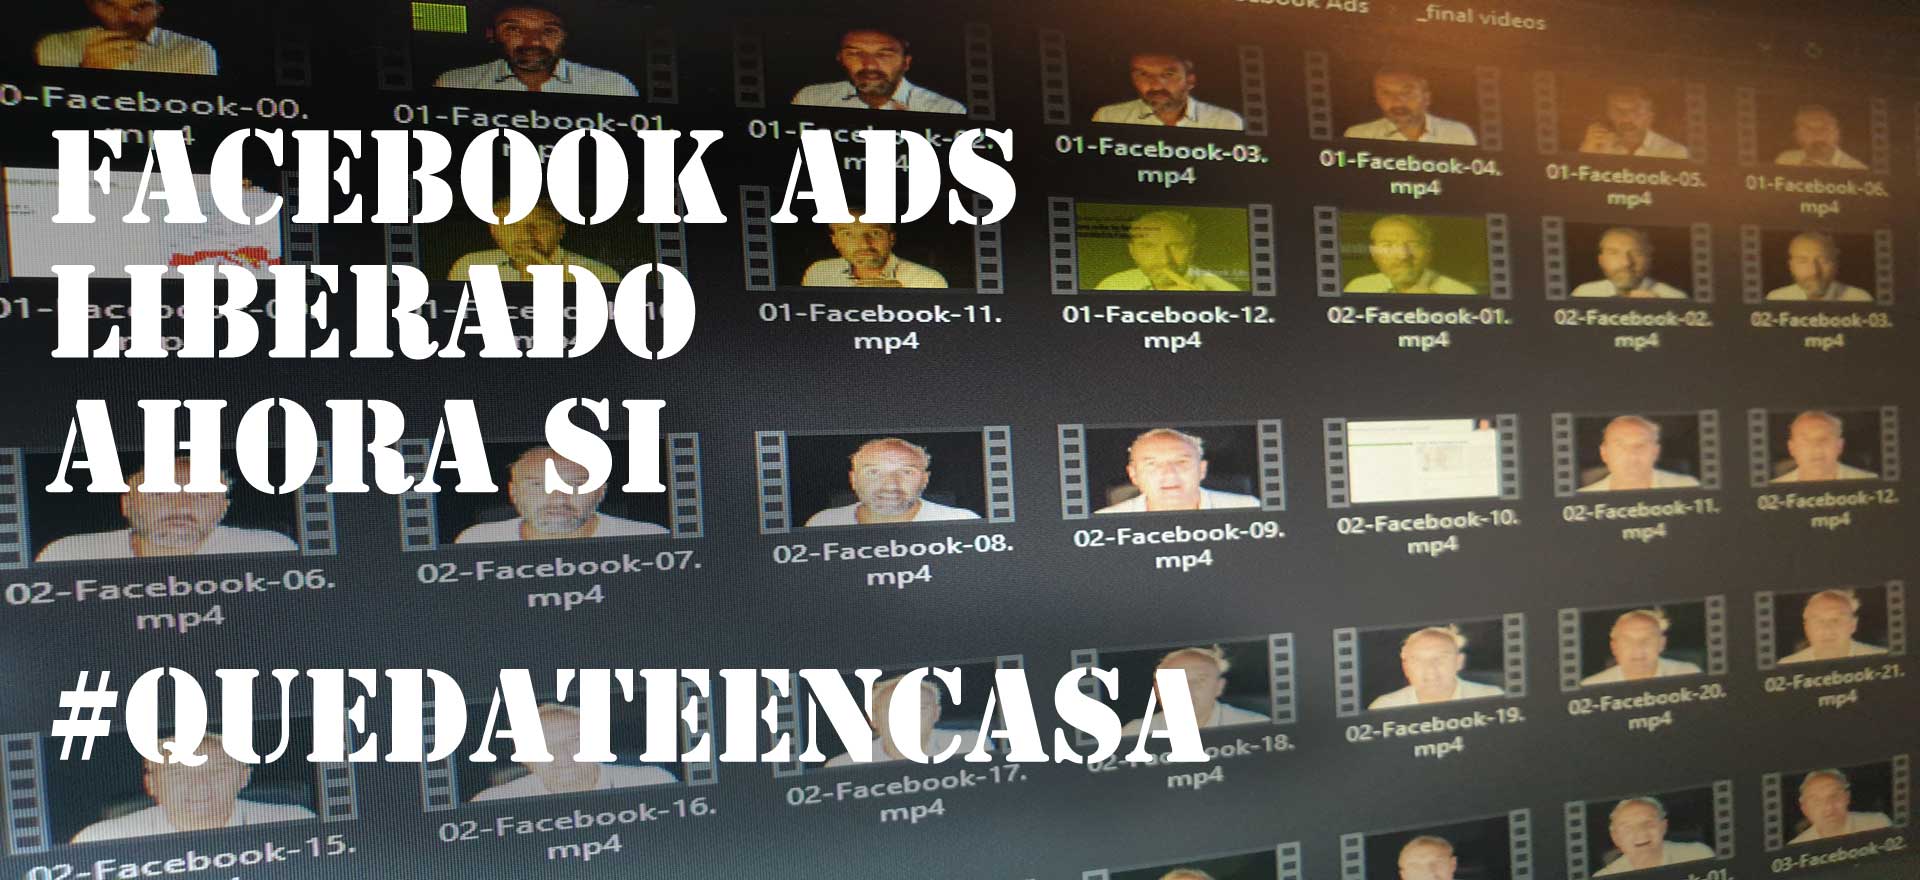 QuedateEnCasa acebook Ads Covid-19 Mandomando